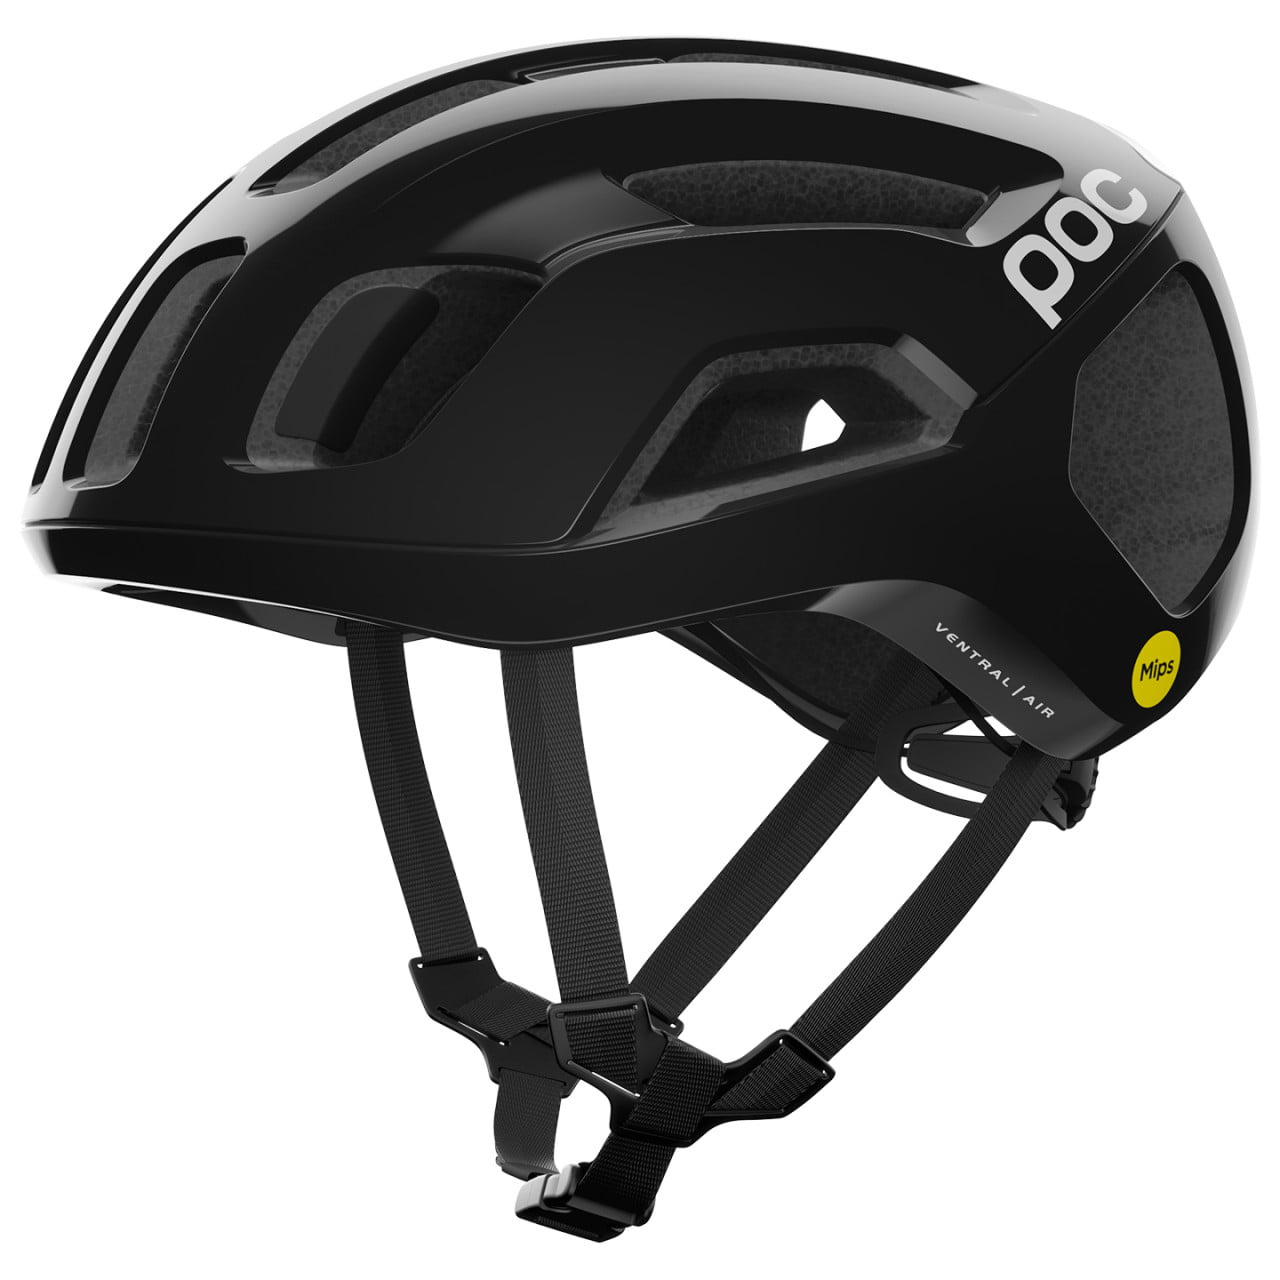 Ventral Air Mips Road Bike Helmet